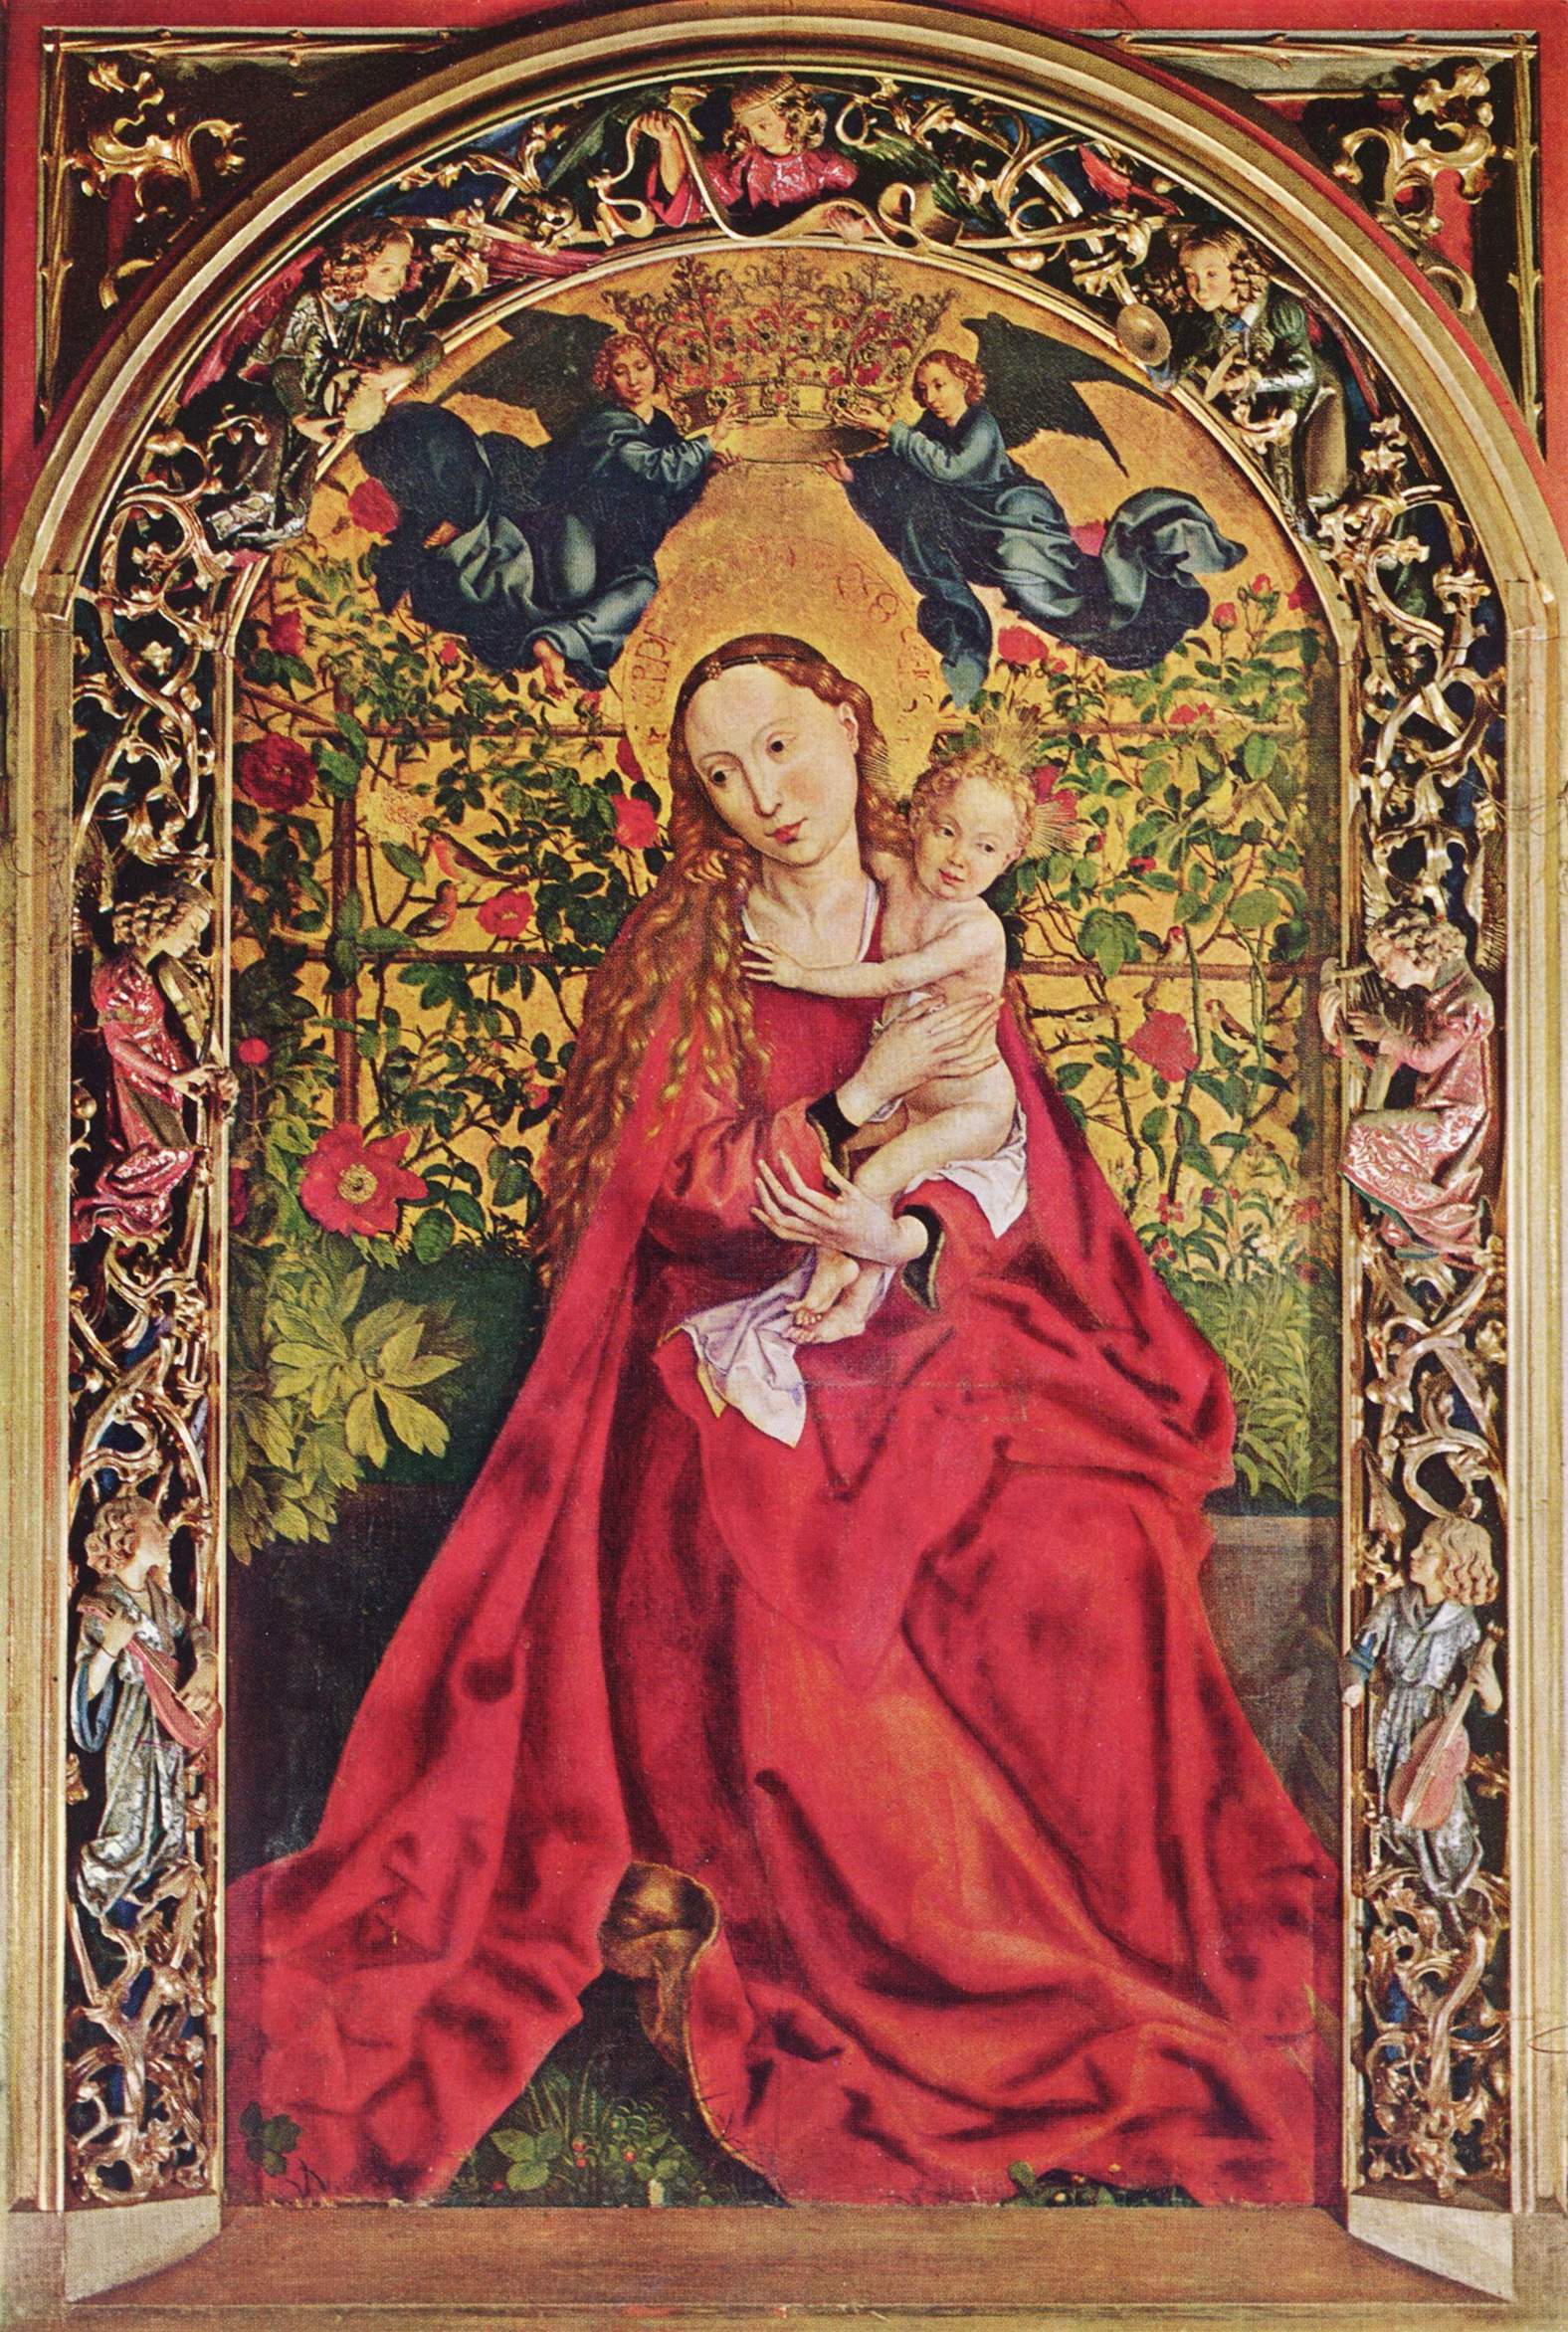 La Vierge au buisson de roses dans images sacrée 6dsatm9i